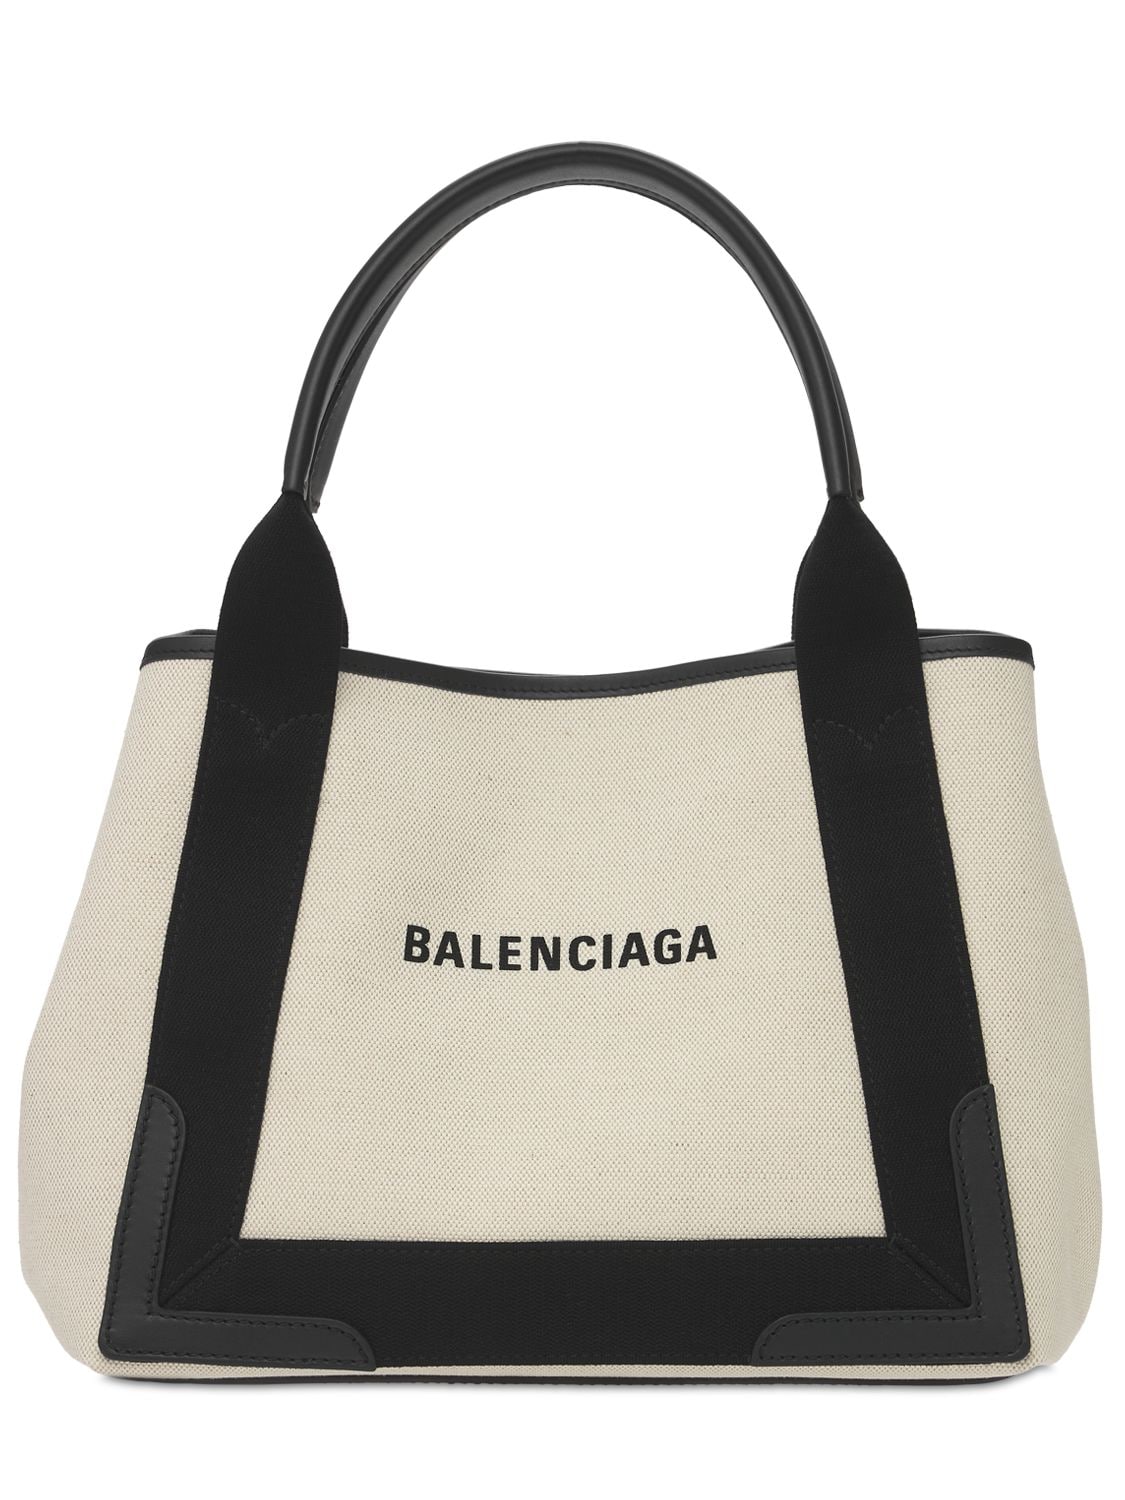 Balenciaga - Sm navy cabas canvas bag - Natural/Black | Luisaviaroma